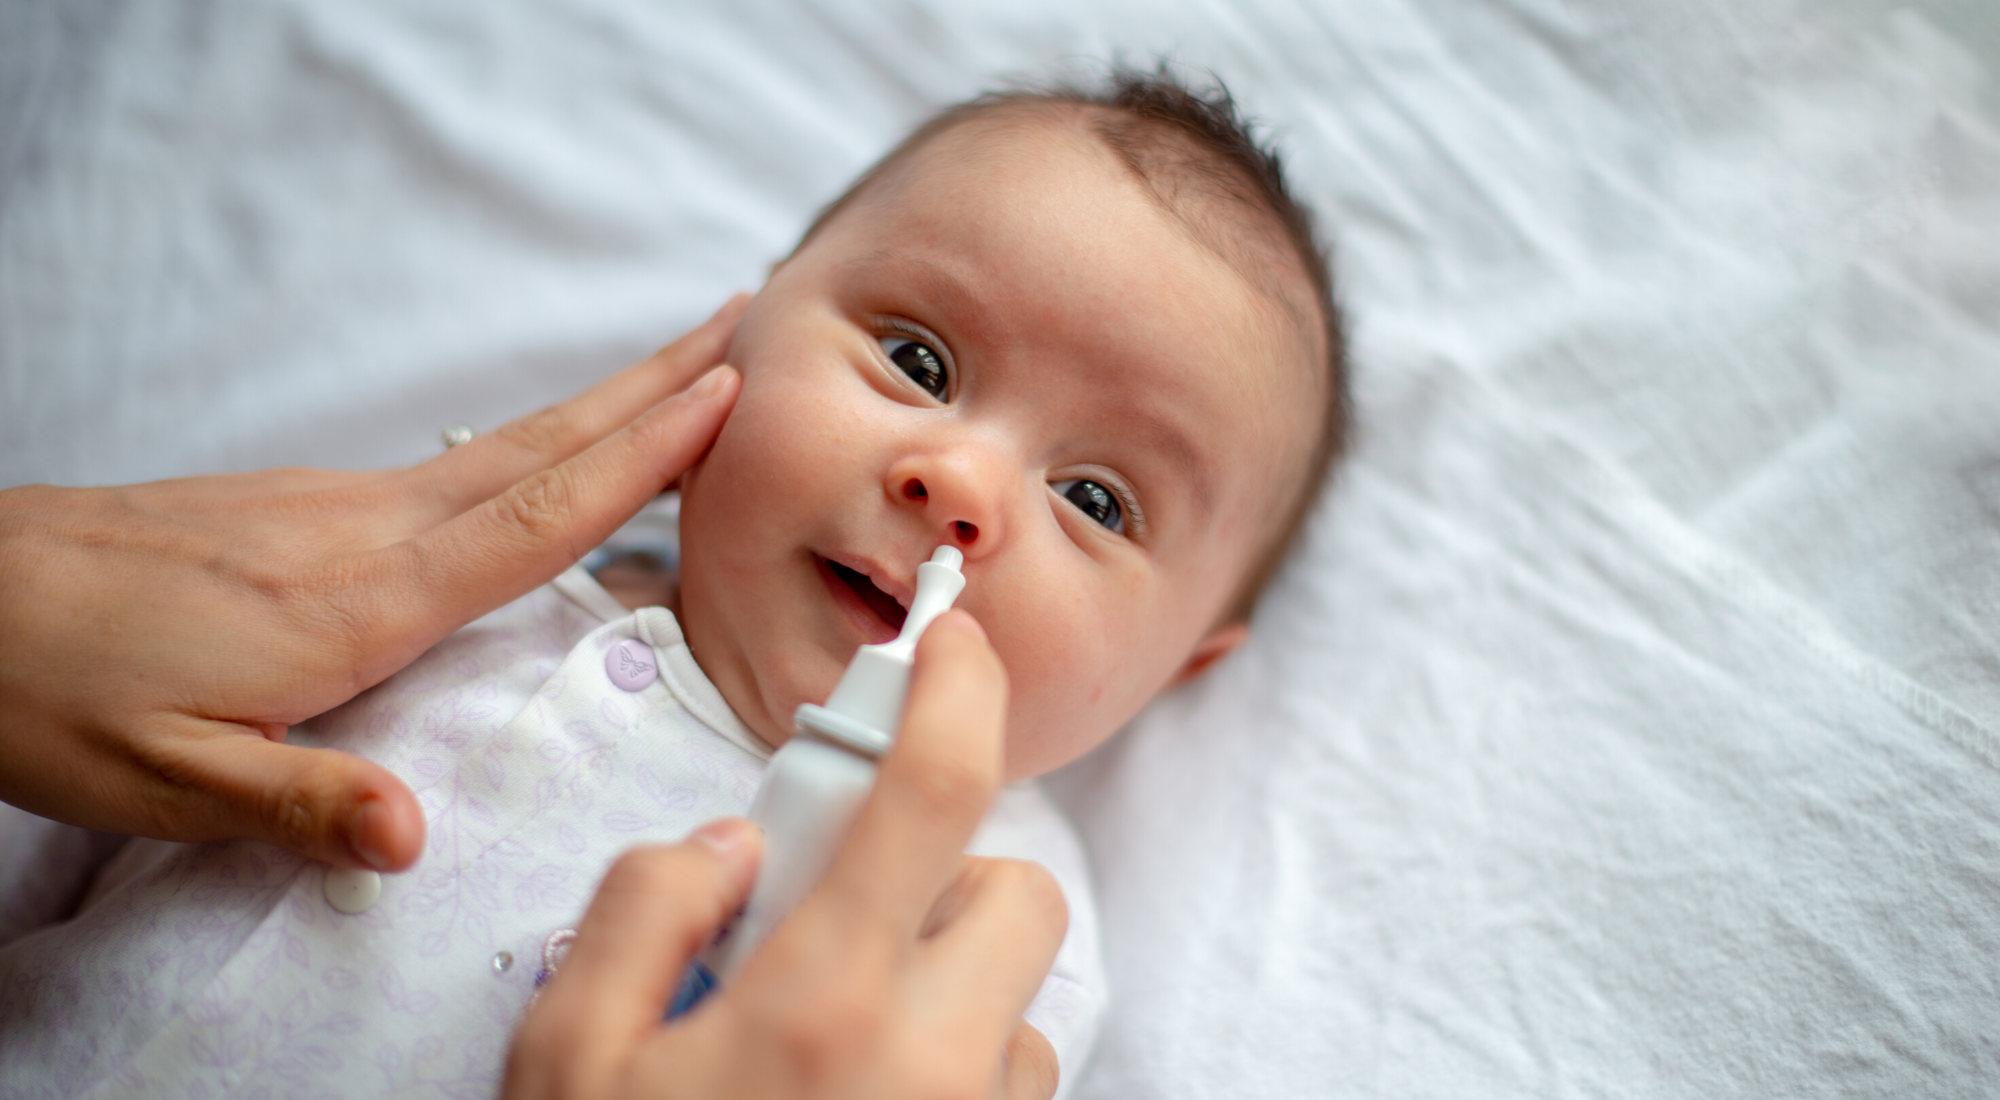 nasal spray in baby's eye